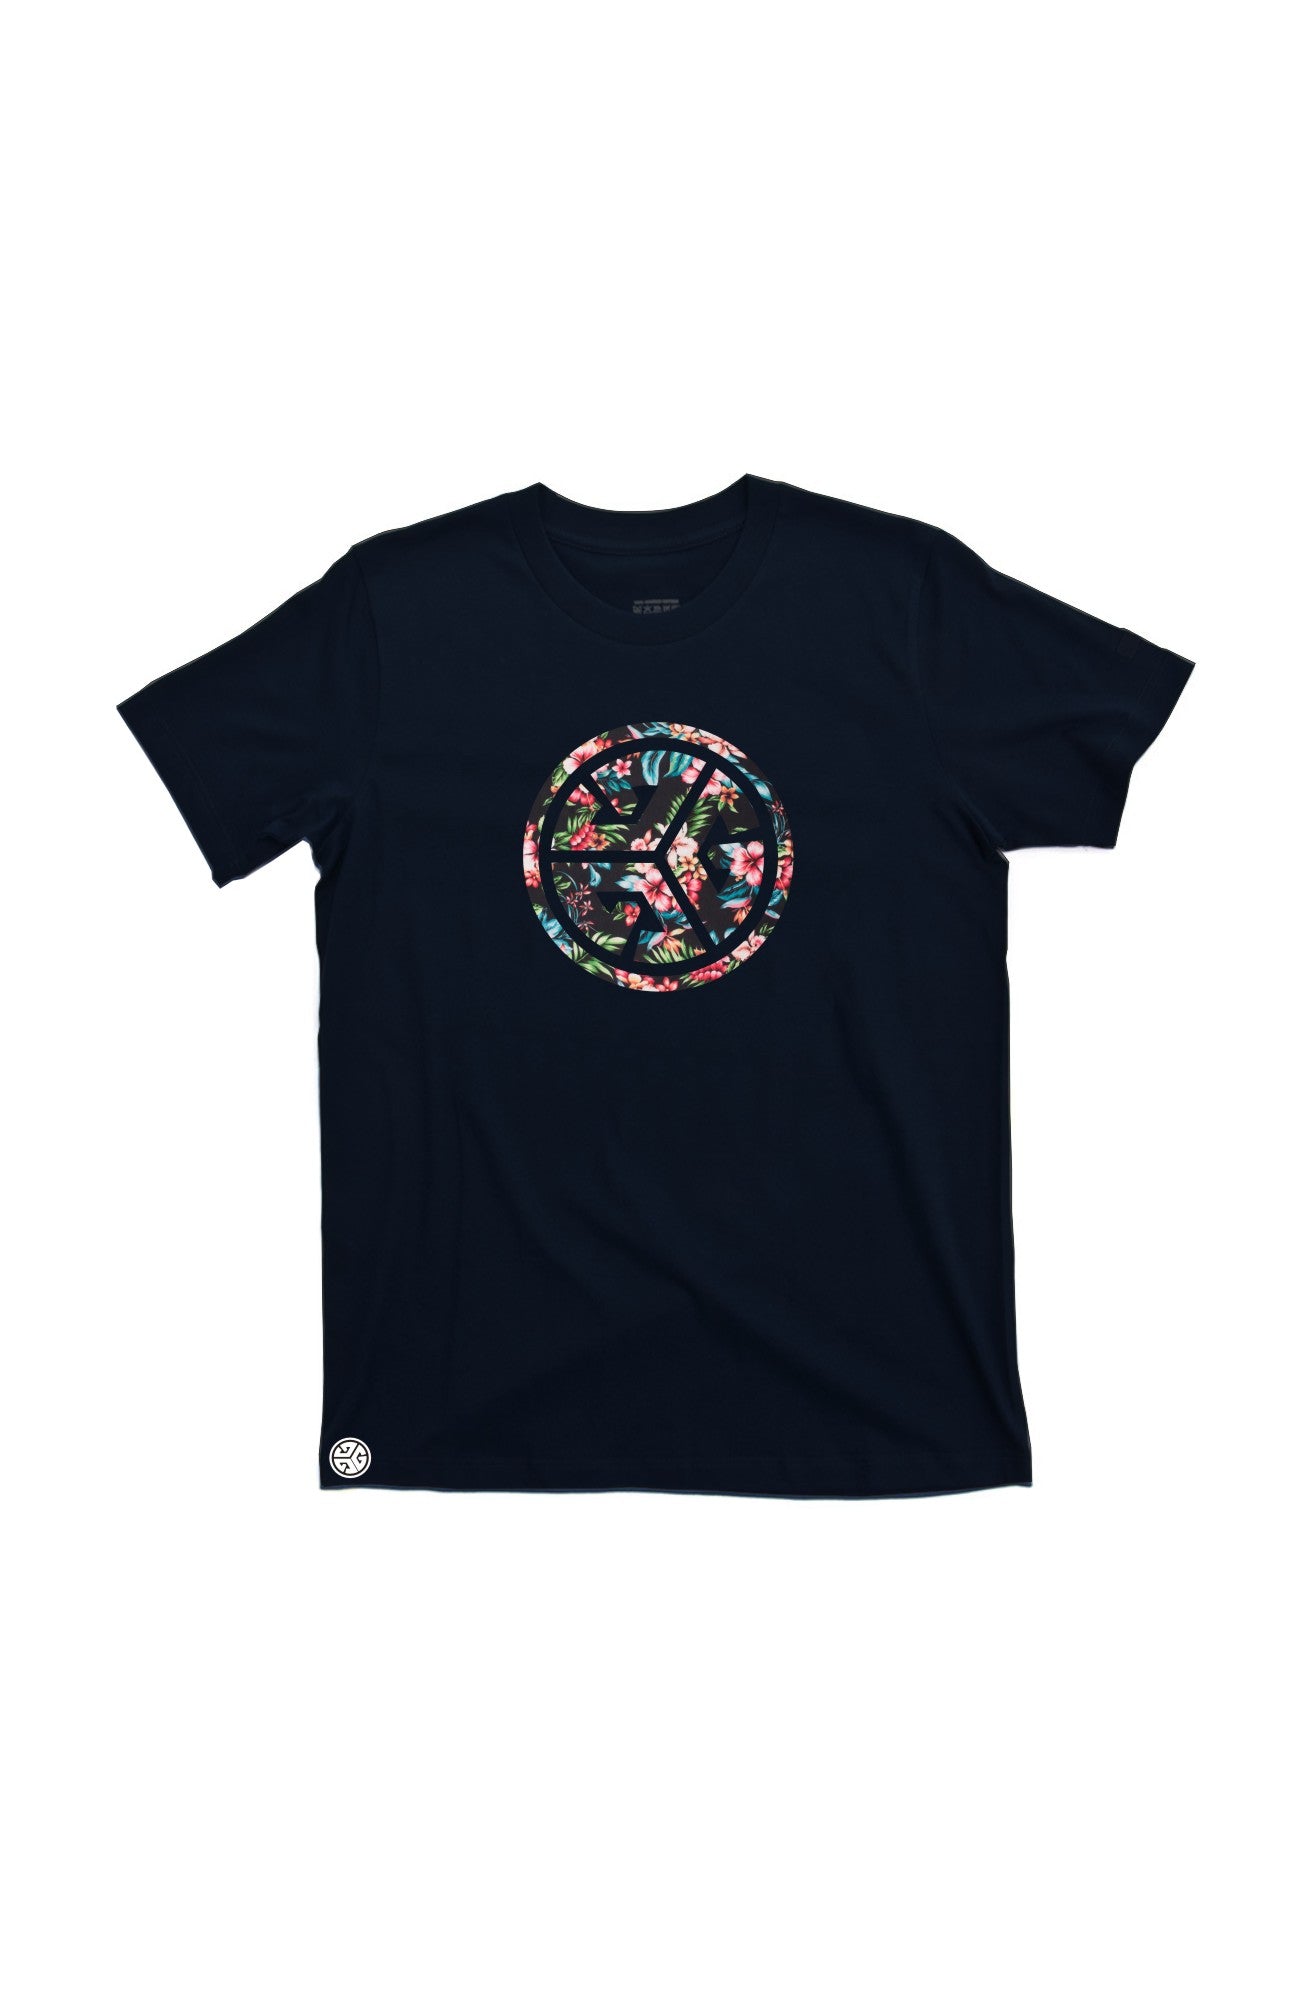 Floral TRI-G  T-shirt by Grubwear